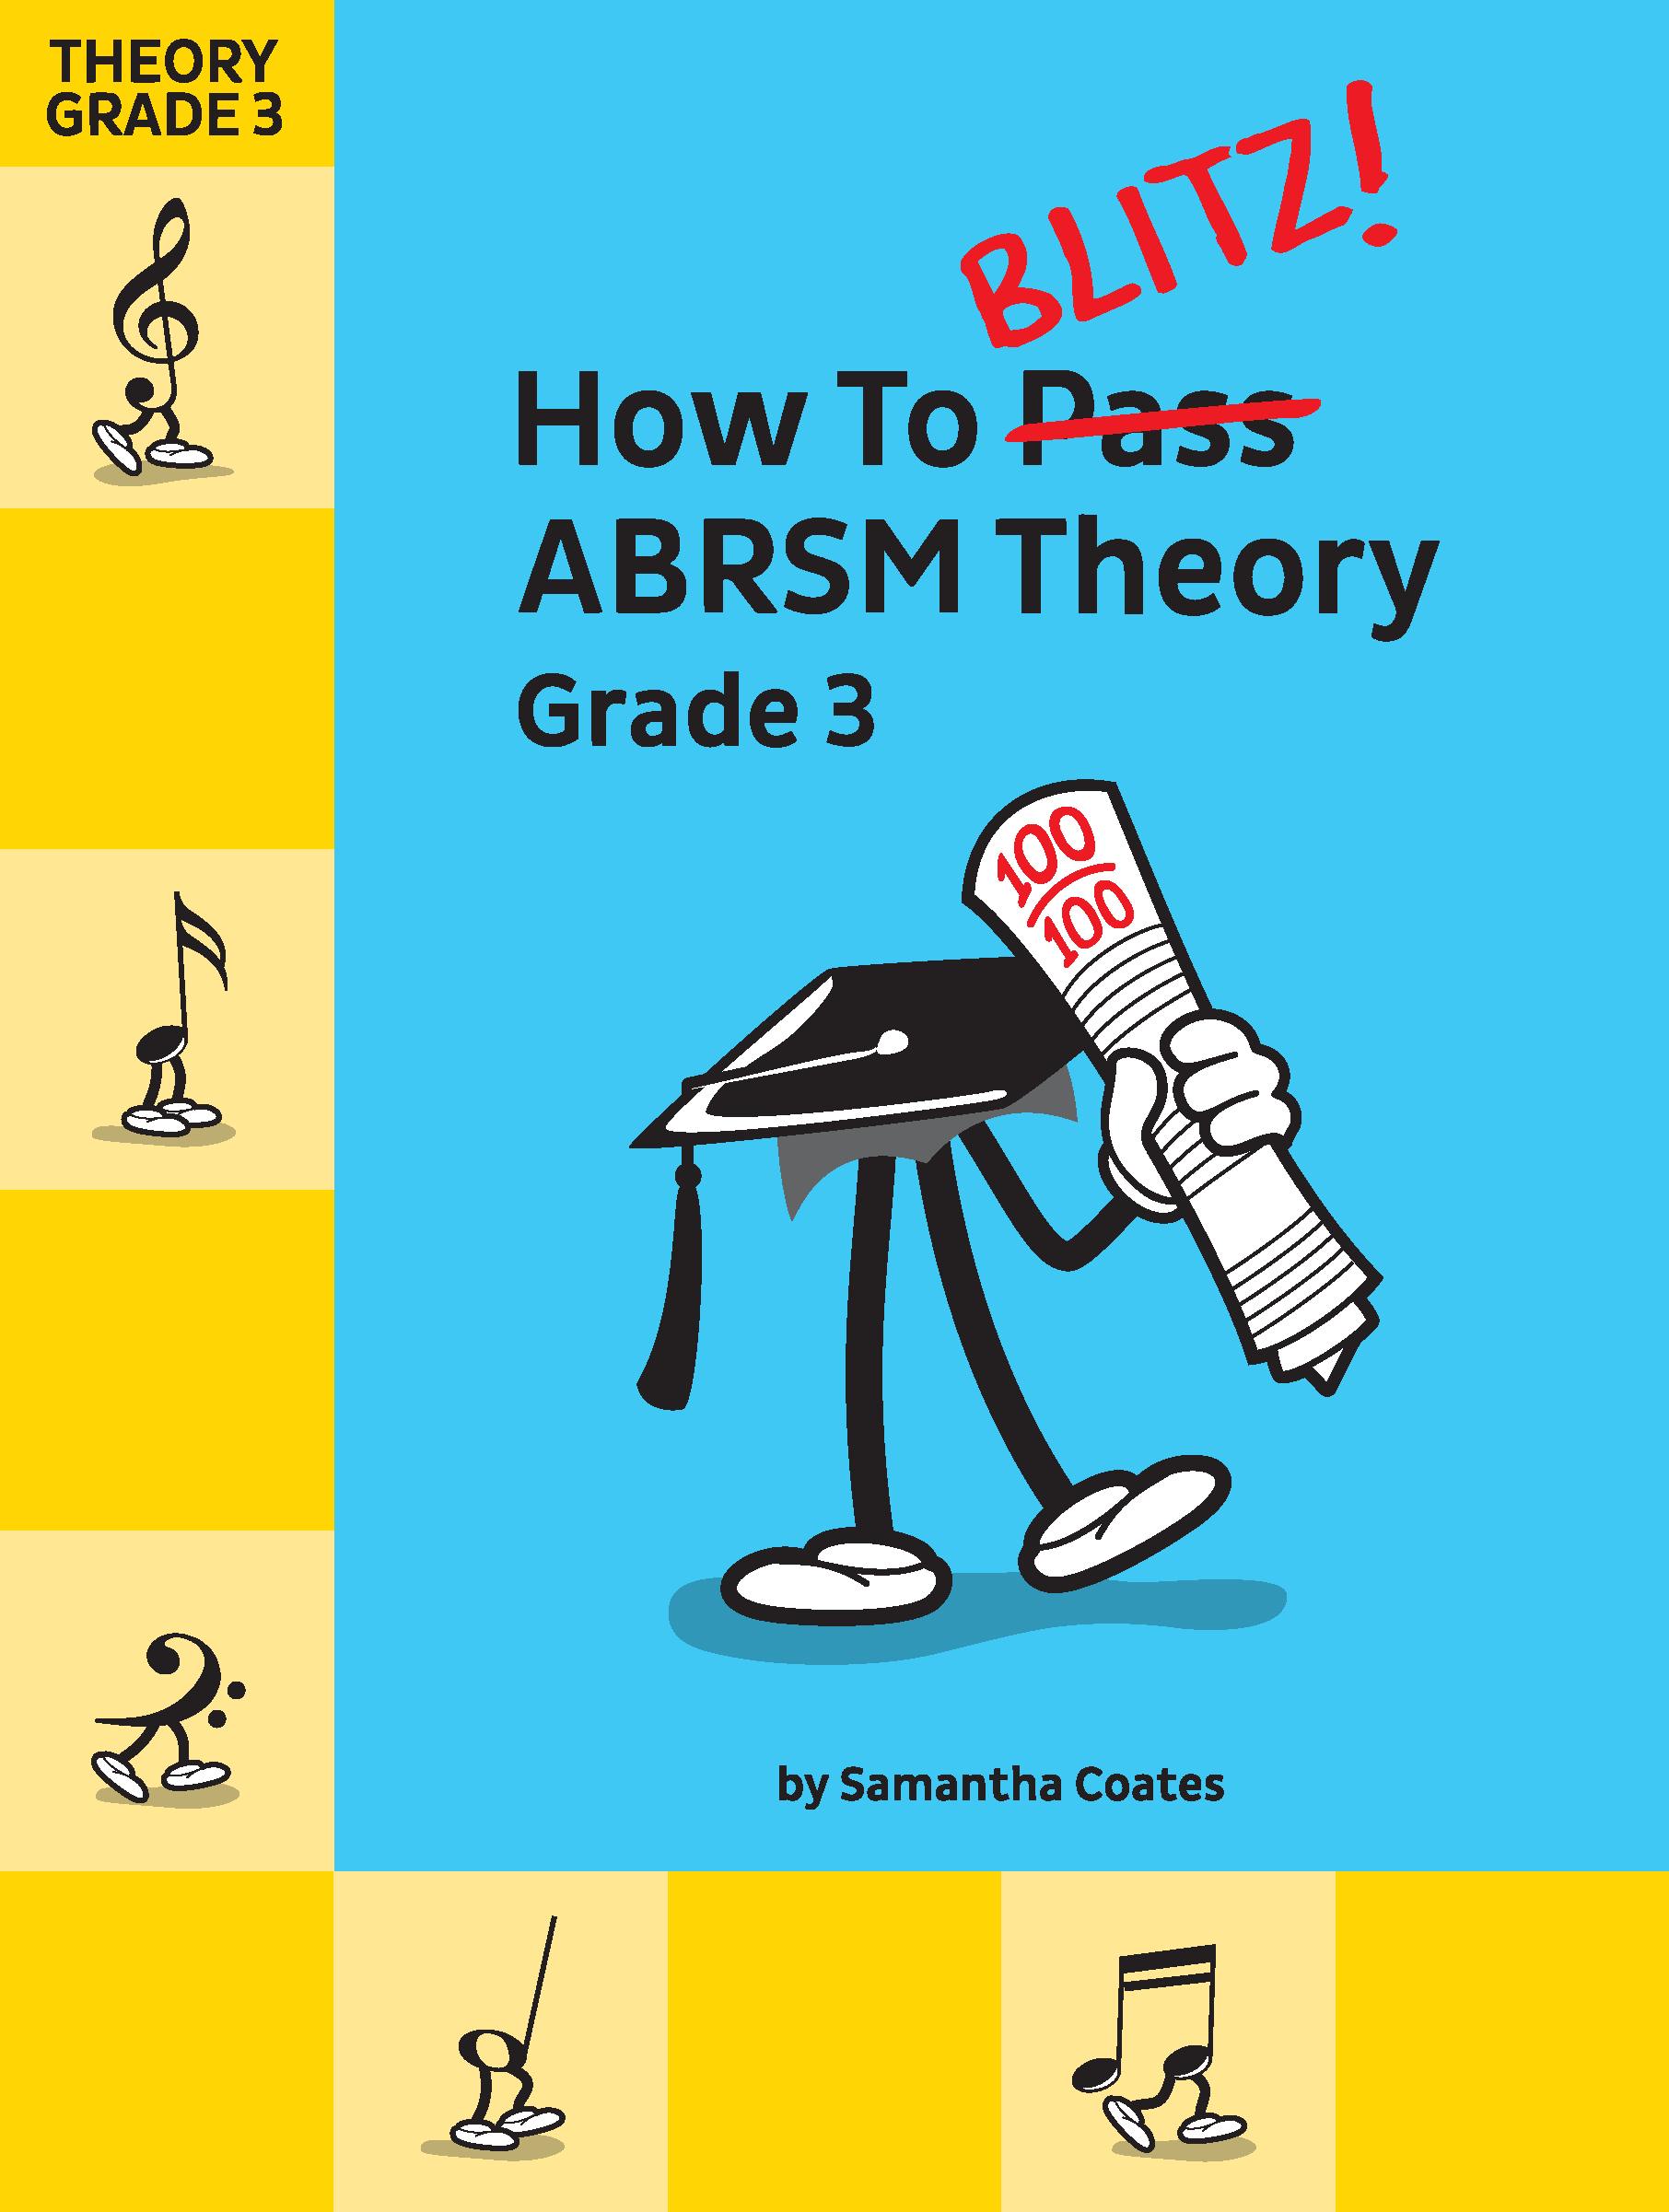 Grade 3 ABRSM Theory